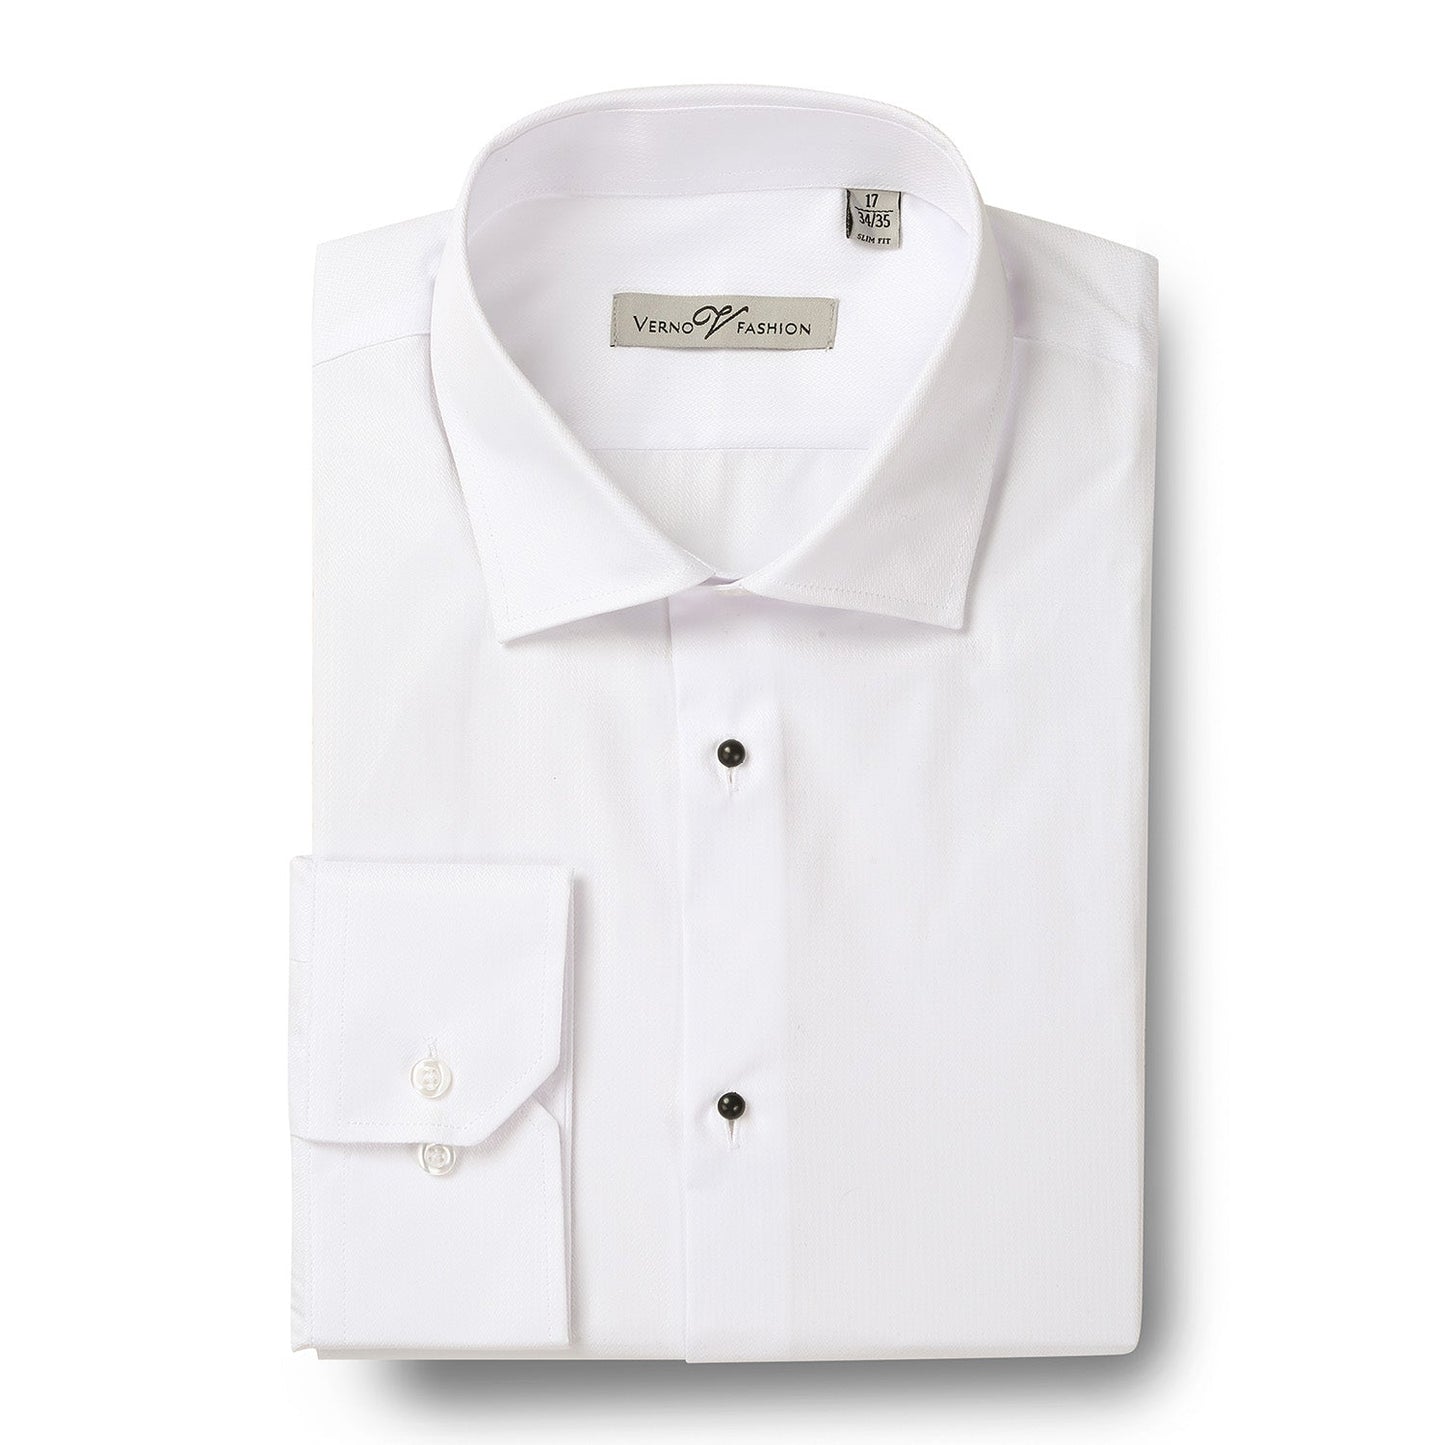 TUX01 Men's Slim Fit Long Sleeve Tuxedo White Dress Shirt